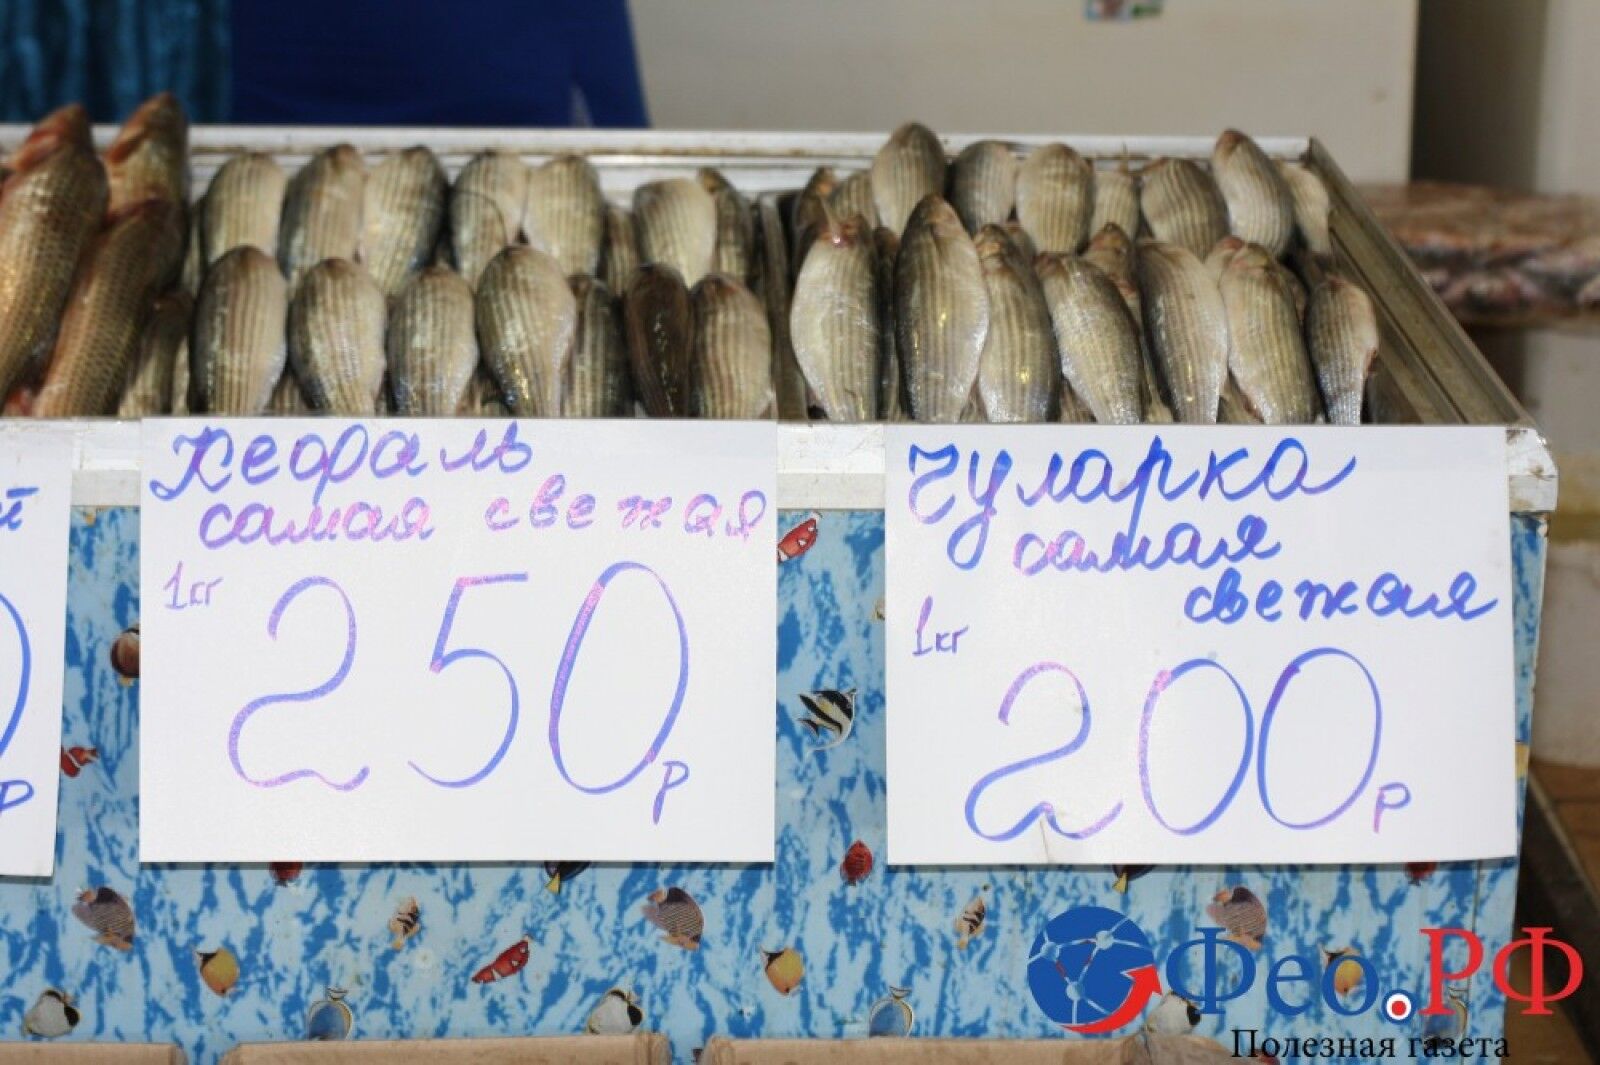 Від цін у шоці: у мережі показали захмарну вартість продуктів у Криму